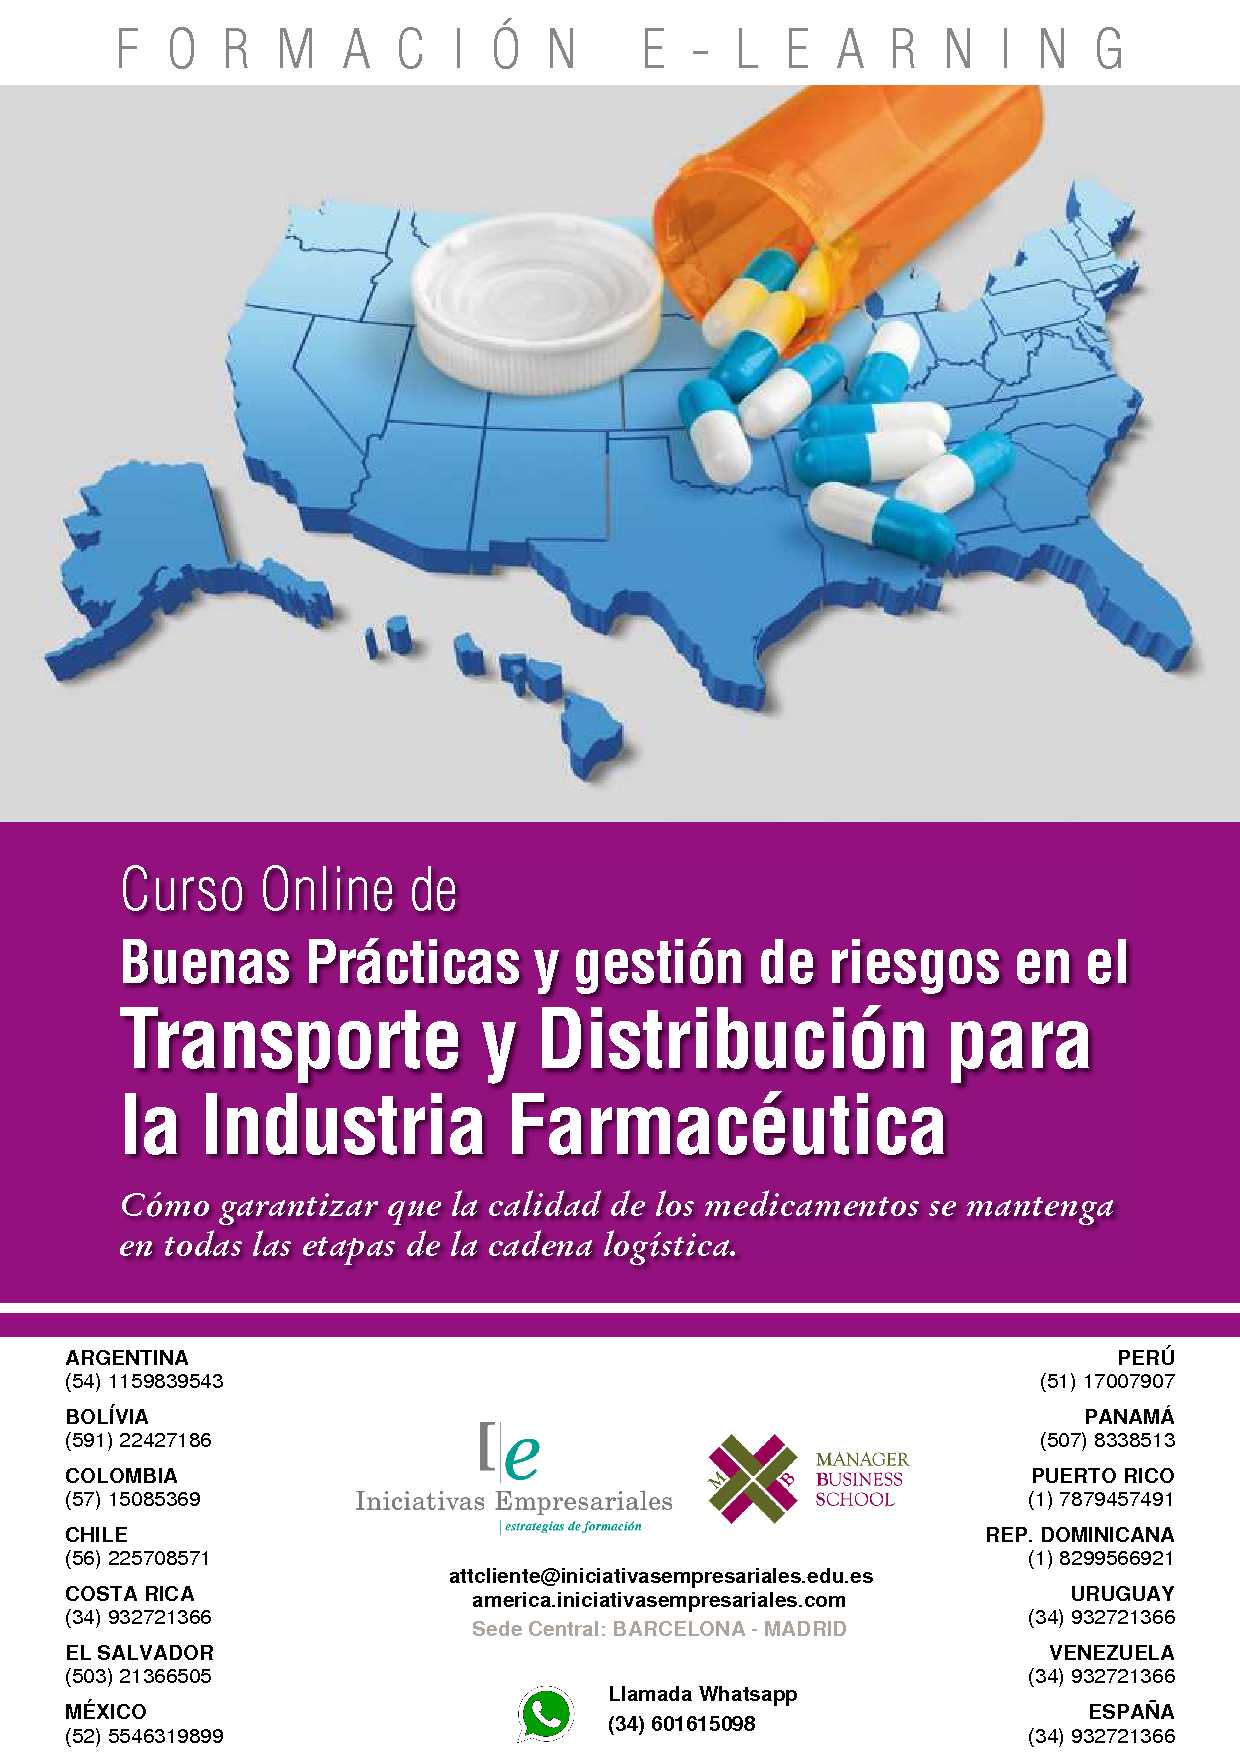 Buenas Prácticas y gestión de riesgos en el Transporte y Distribución para la Industria Farmacéutica